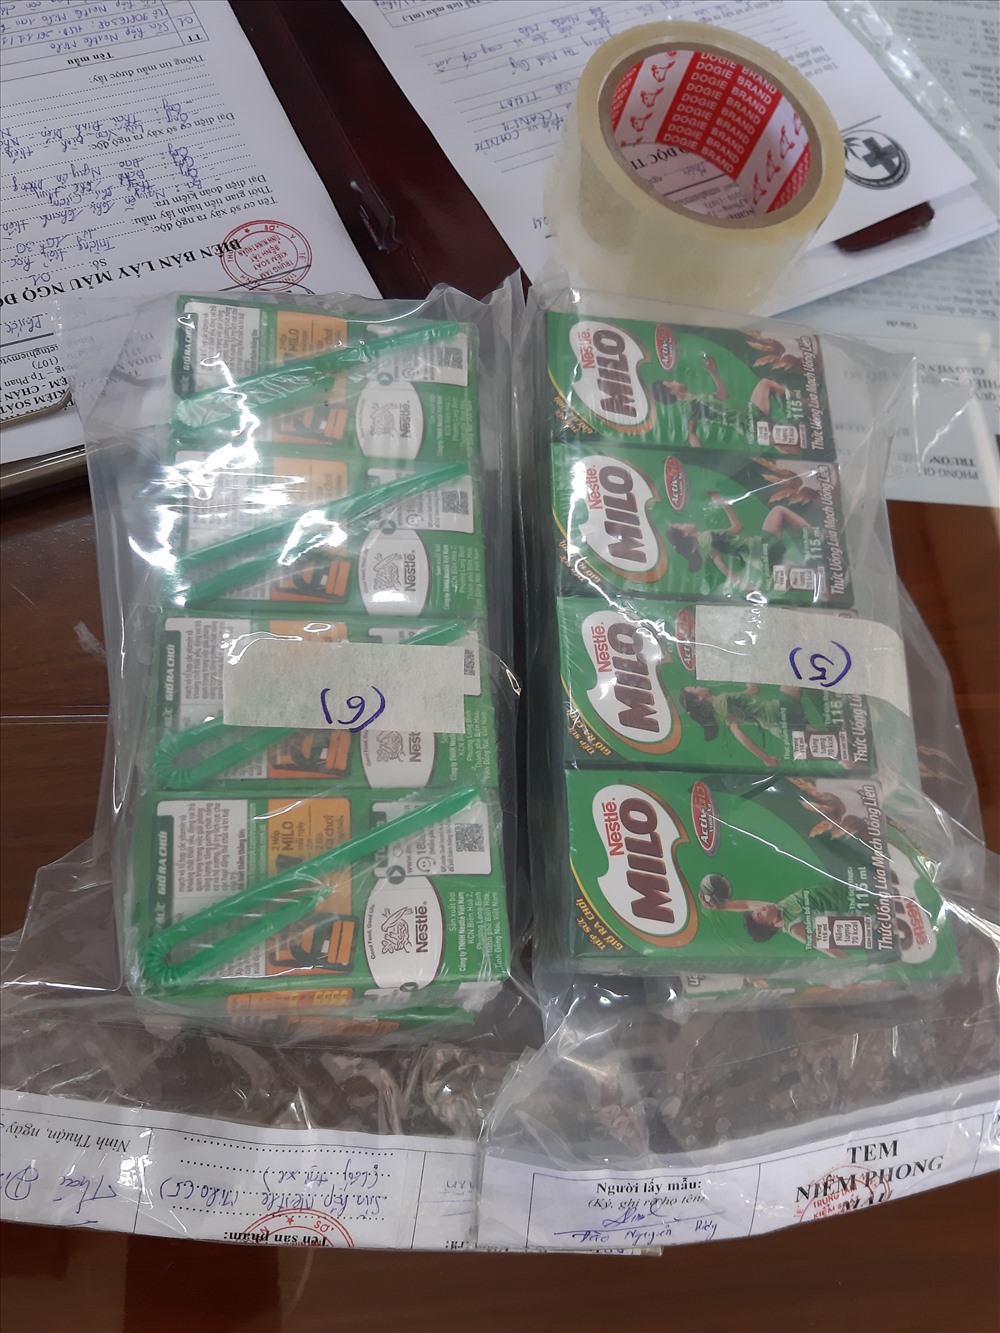 Cơ quan chức năng Ninh Thuận đang tiến hành thu giữ, niêm phong một số mẫu sữa Nestle MiLo, để tiến hành xét nghiệm và làm rõ vụ việc.